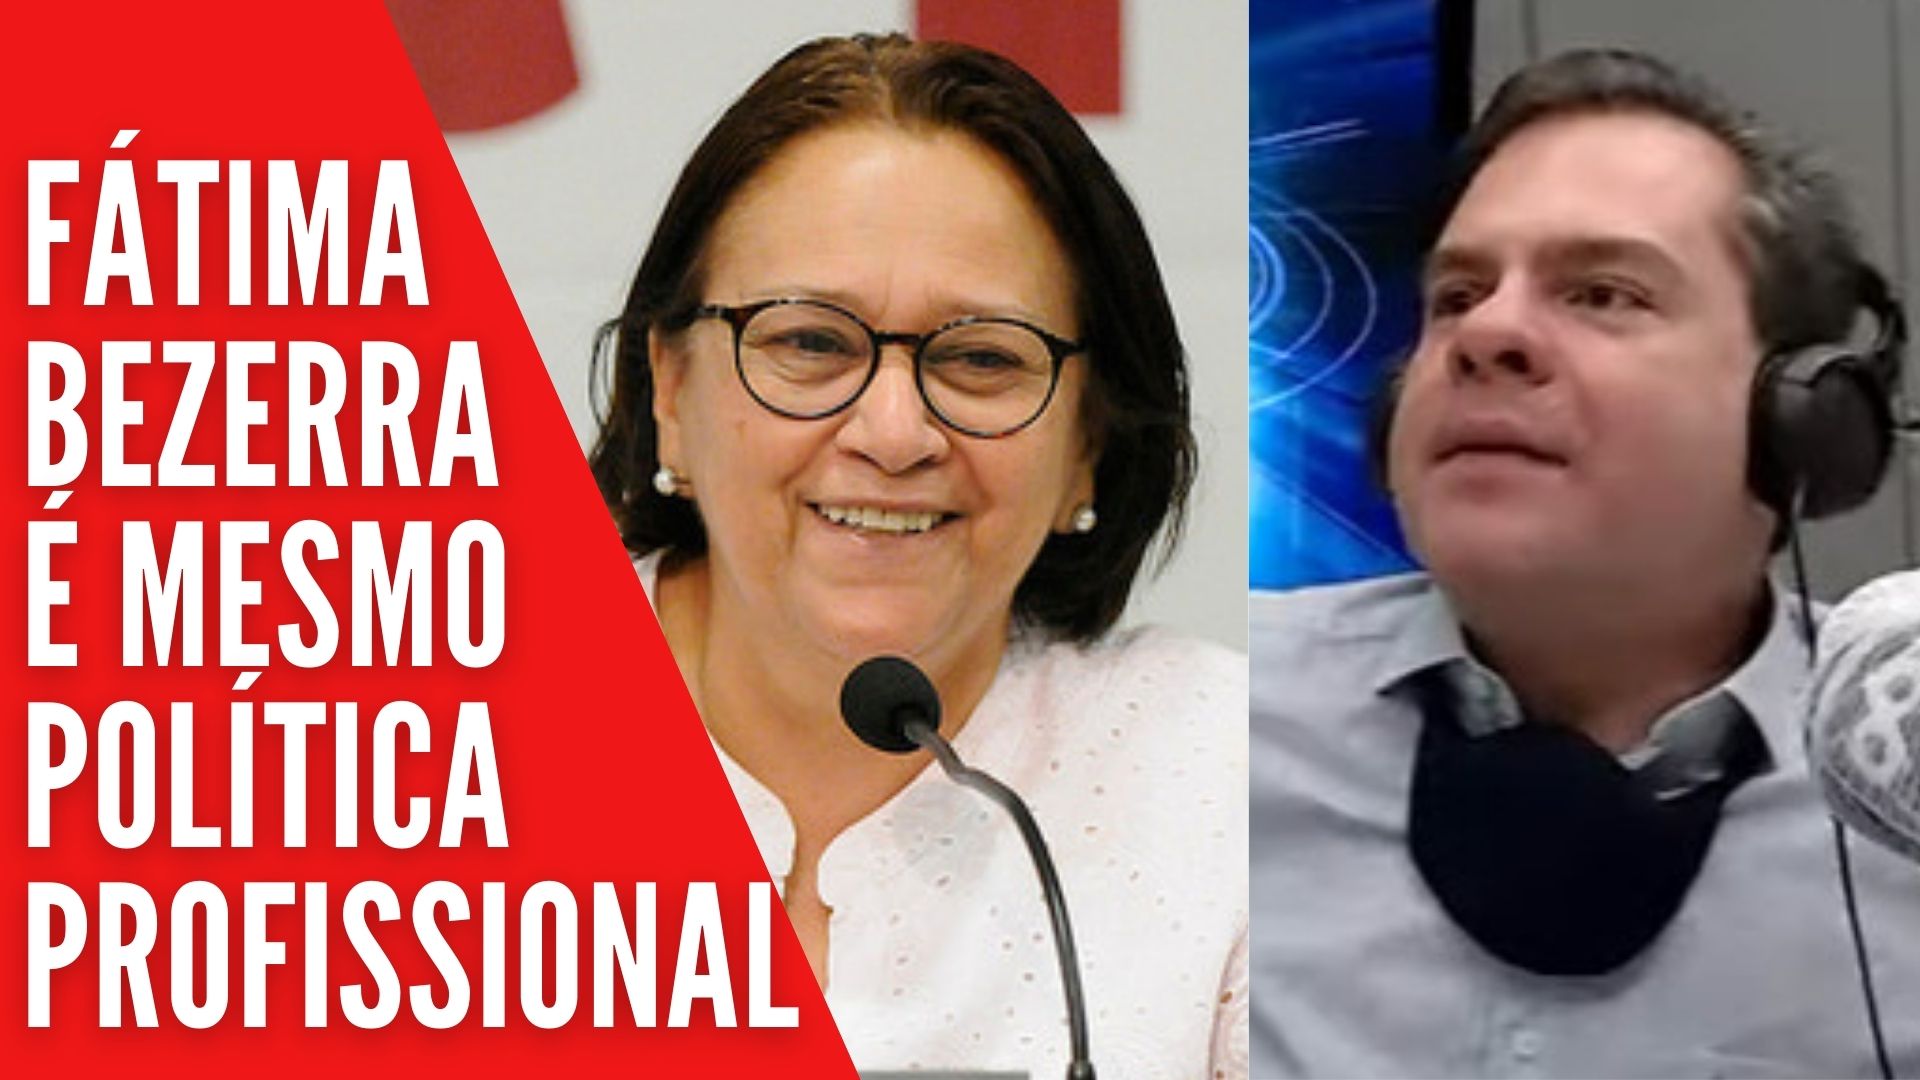 OPINIÃO: Reajuste para servidores foi "jogada eleitoral" de Fátima Bezerra